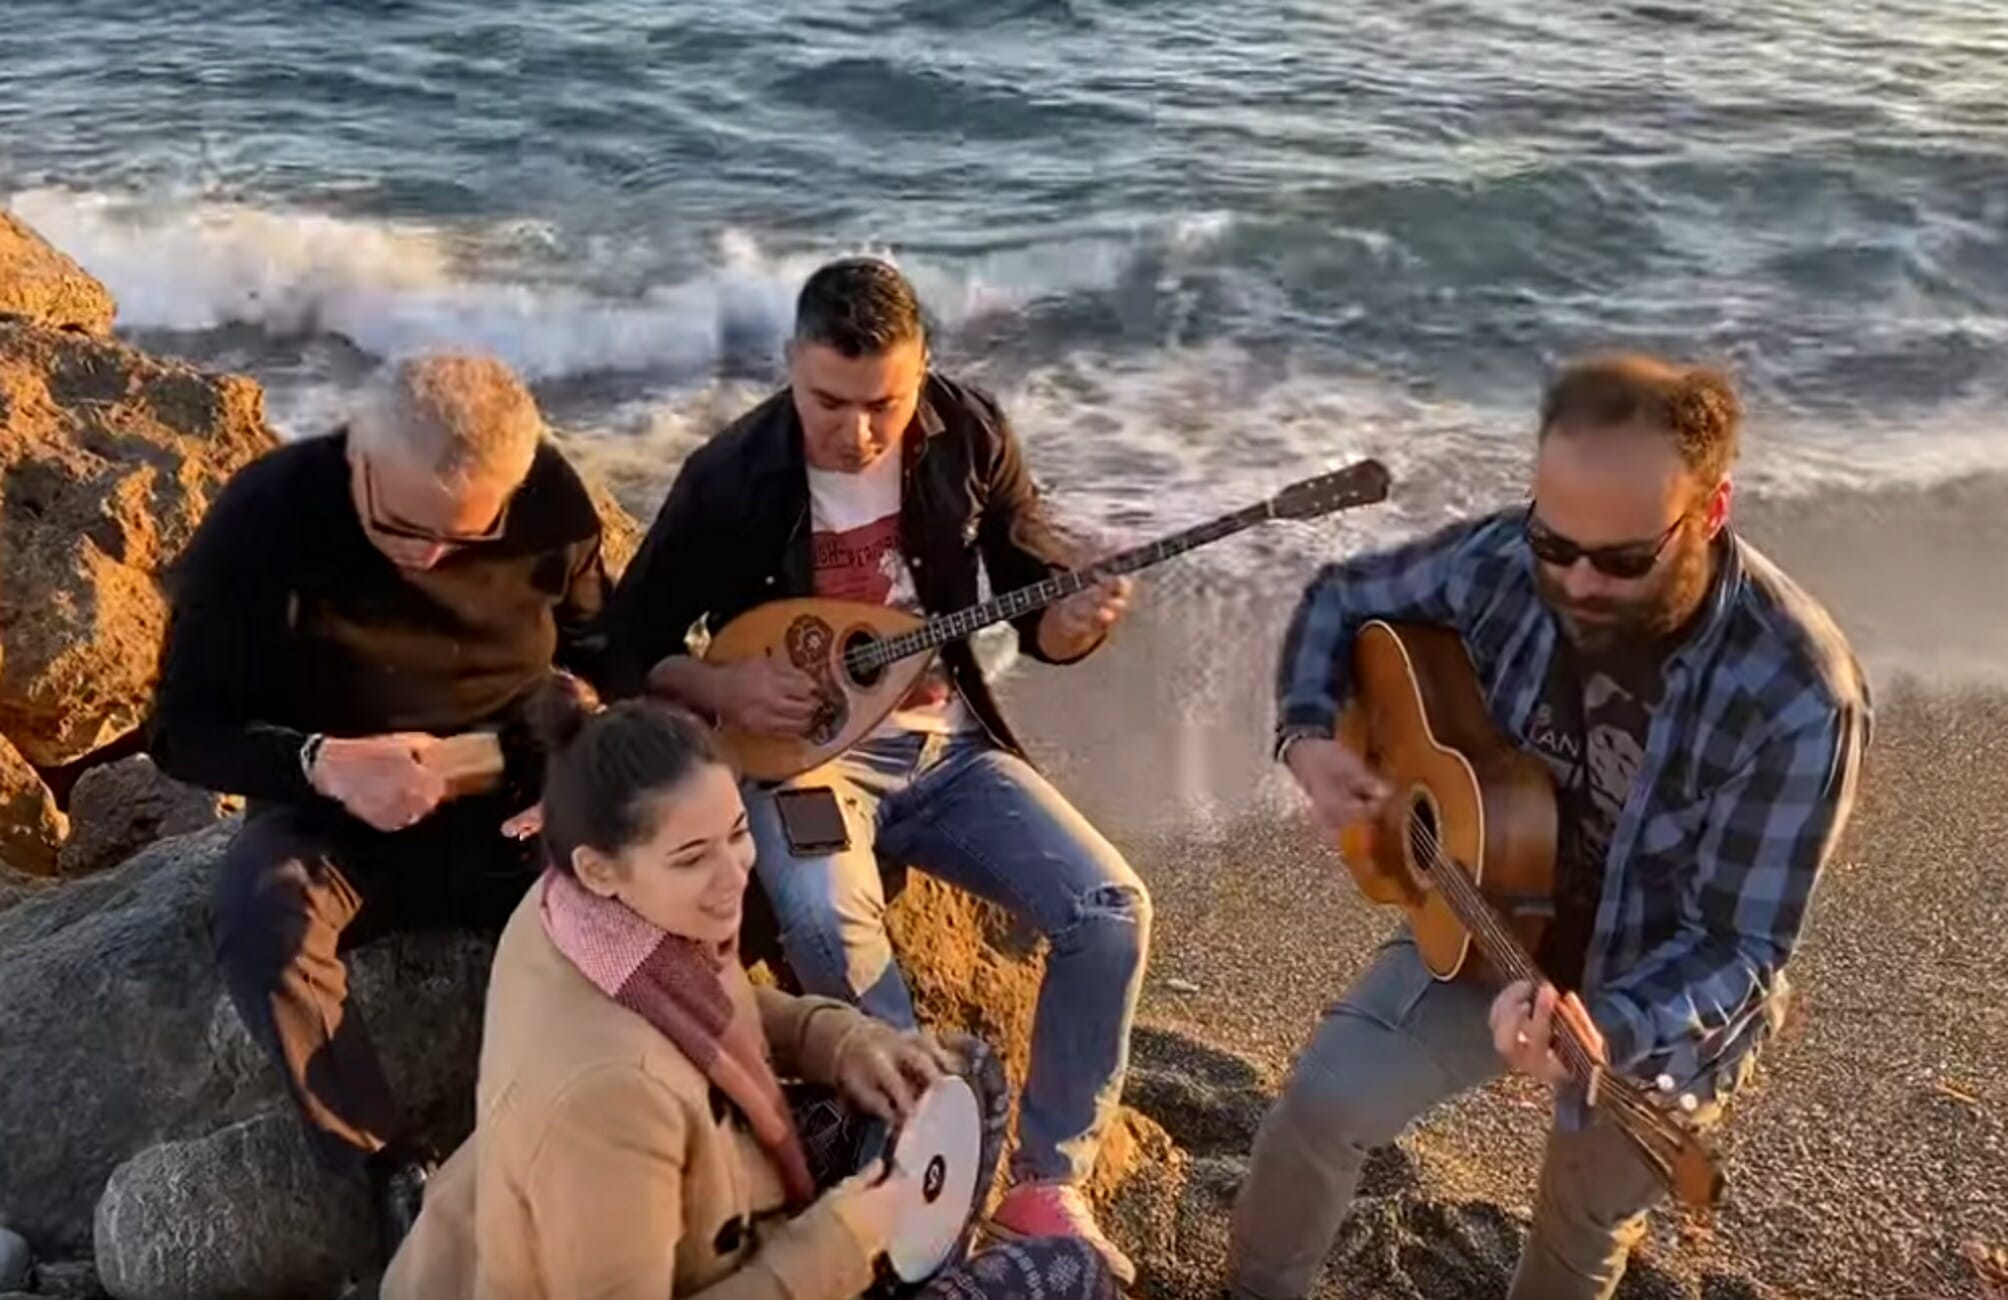 Κορονοϊός: Επικό τραγούδι στην Κρήτη! “Βγάλε τη μάσκα μη φοβάσαι φίλα με πανάθεμά σε”